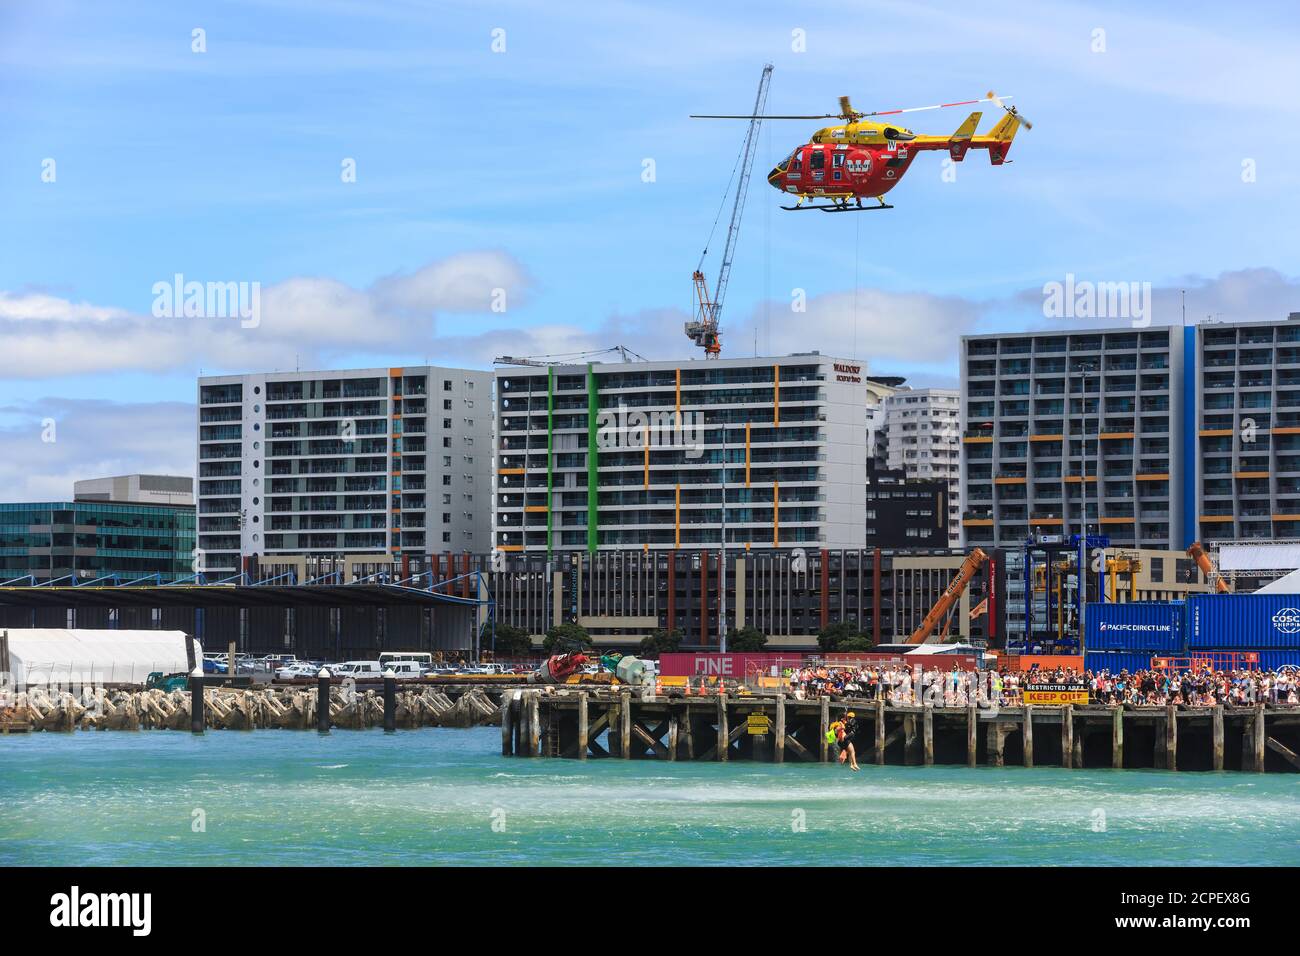 El helicóptero de rescate Westpac realiza un rescate simulado en el puerto de Auckland, Nueva Zelanda, visto por una multitud en los muelles. Enero de 26 2019 Foto de stock